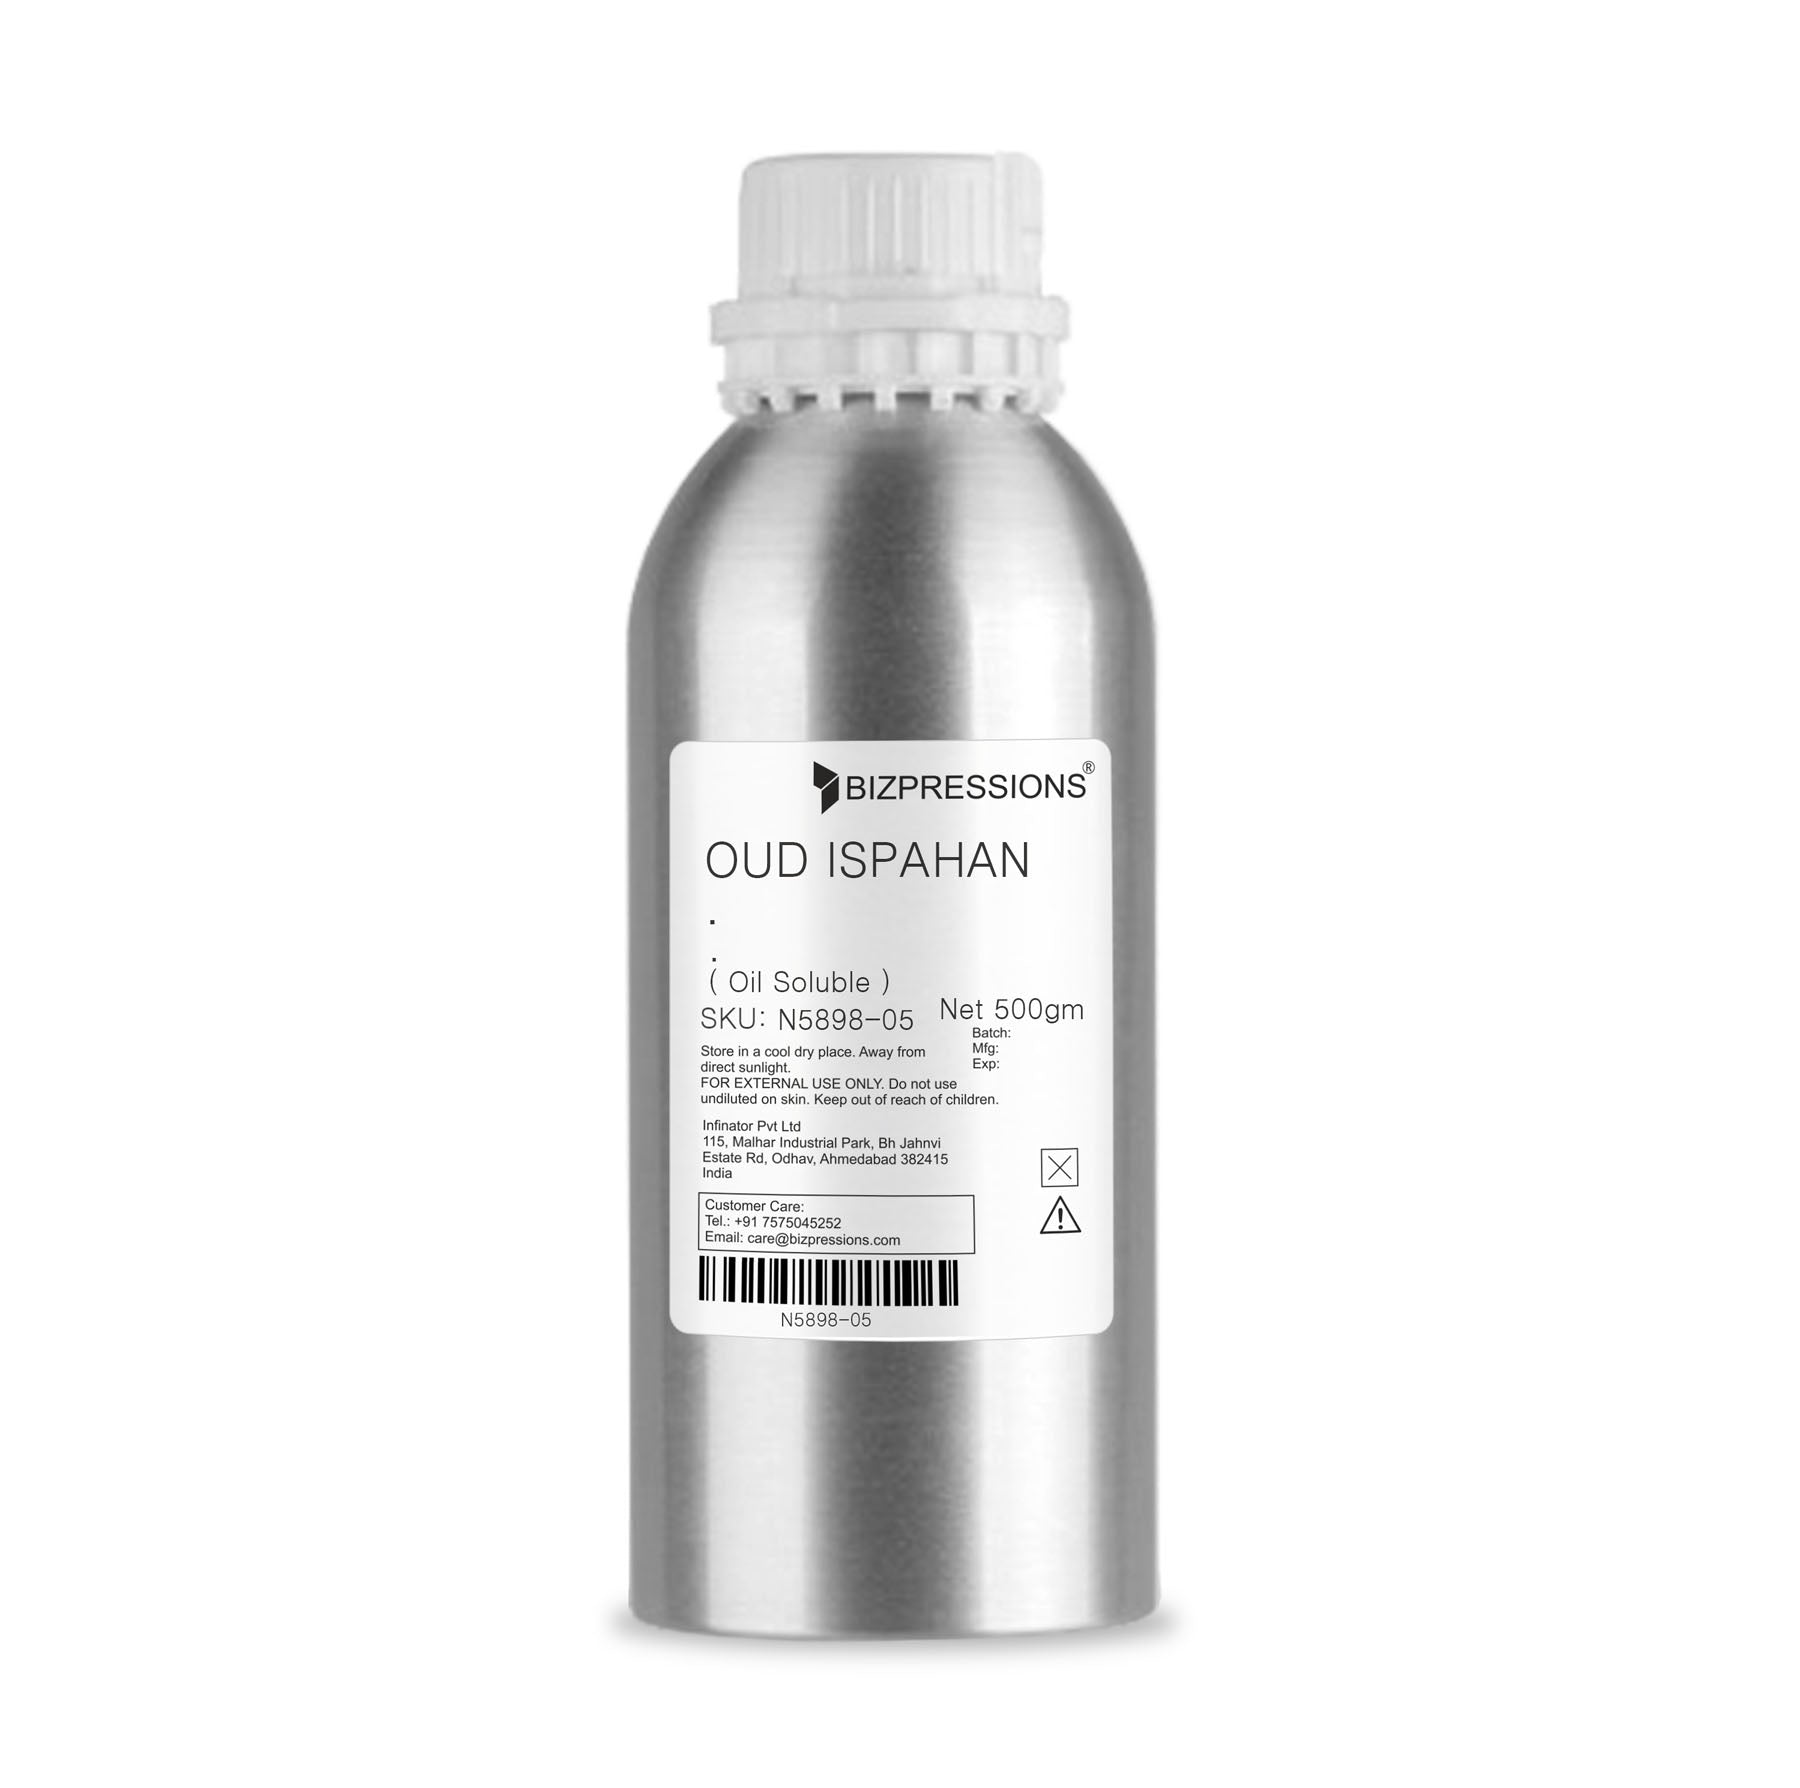 OUD ISPAHAN - Fragrance ( Oil Soluble ) - 500 gm